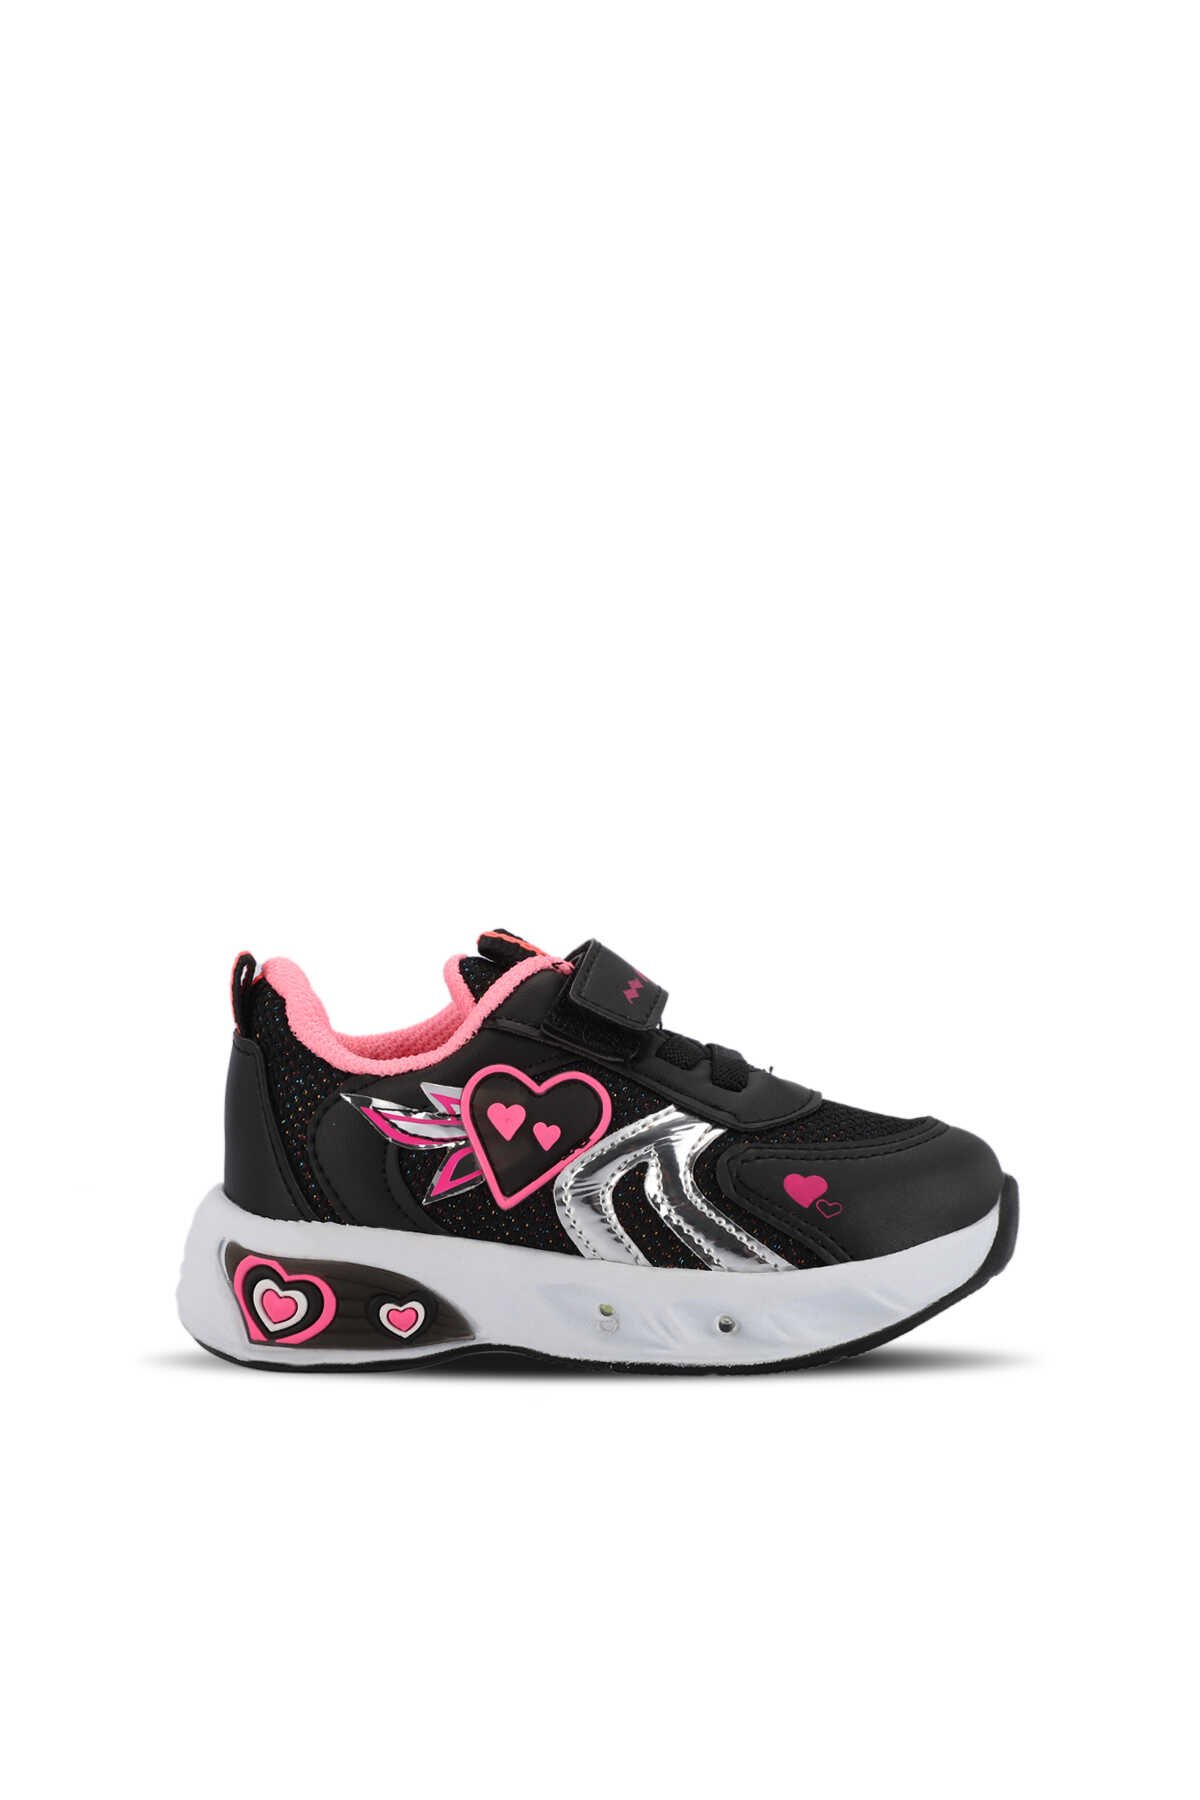 Mille - Mille PAOLINO Kız Çocuk Sneaker Ayakkabı Siyah